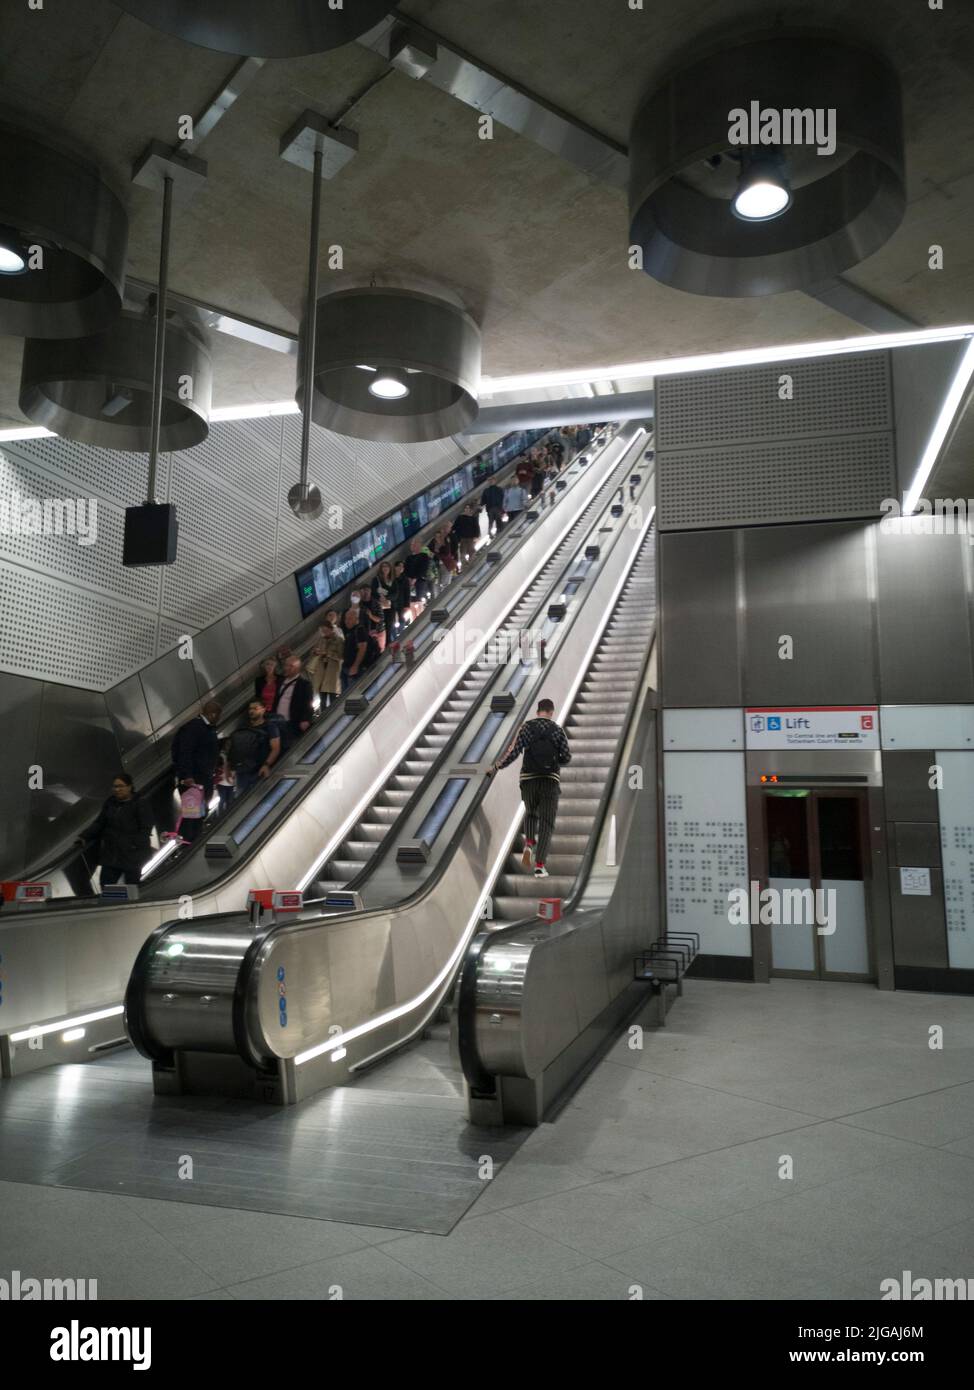 Elizabeth Line, Tottenham CT Rd, Londres, Royaume-Uni, mai 2022. Les escaliers mécaniques de la nouvelle station Tottenham court Road permettent d'accéder à la ligne Elizabeth, station de métro de Londres, W1, Angleterre. Banque D'Images